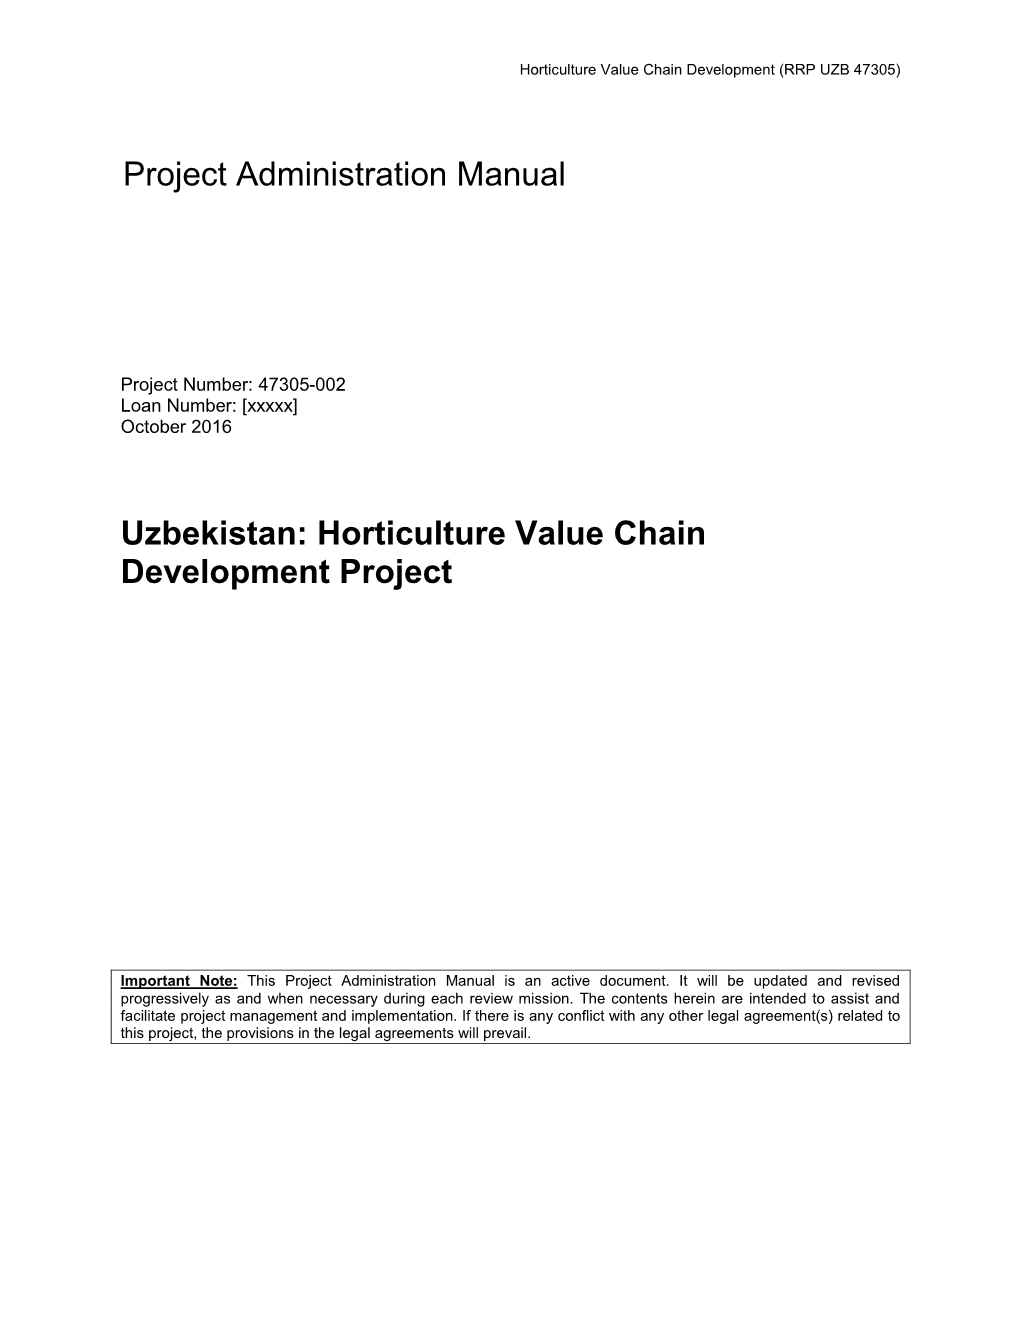 Uzbekistan: Horticulture Value Chain Development Project